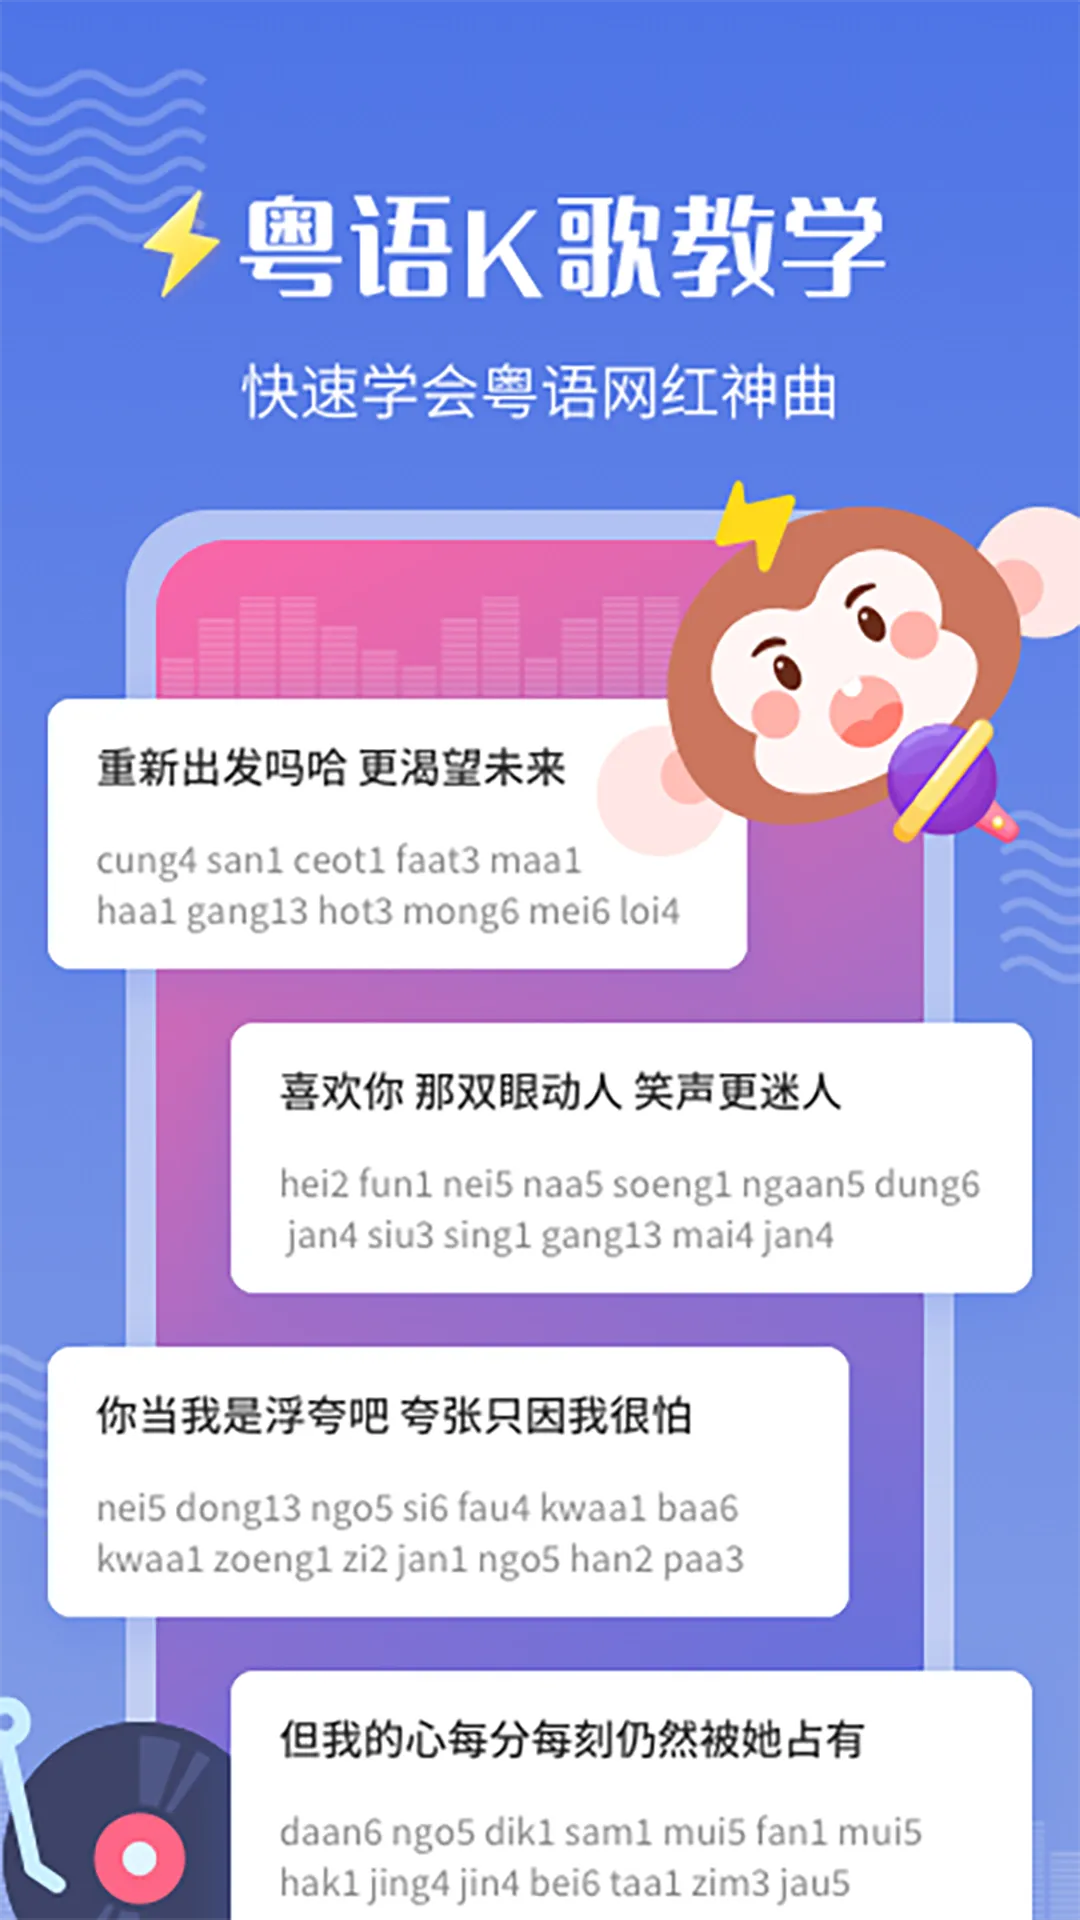 免费学粤语的app推荐 可以学习其它